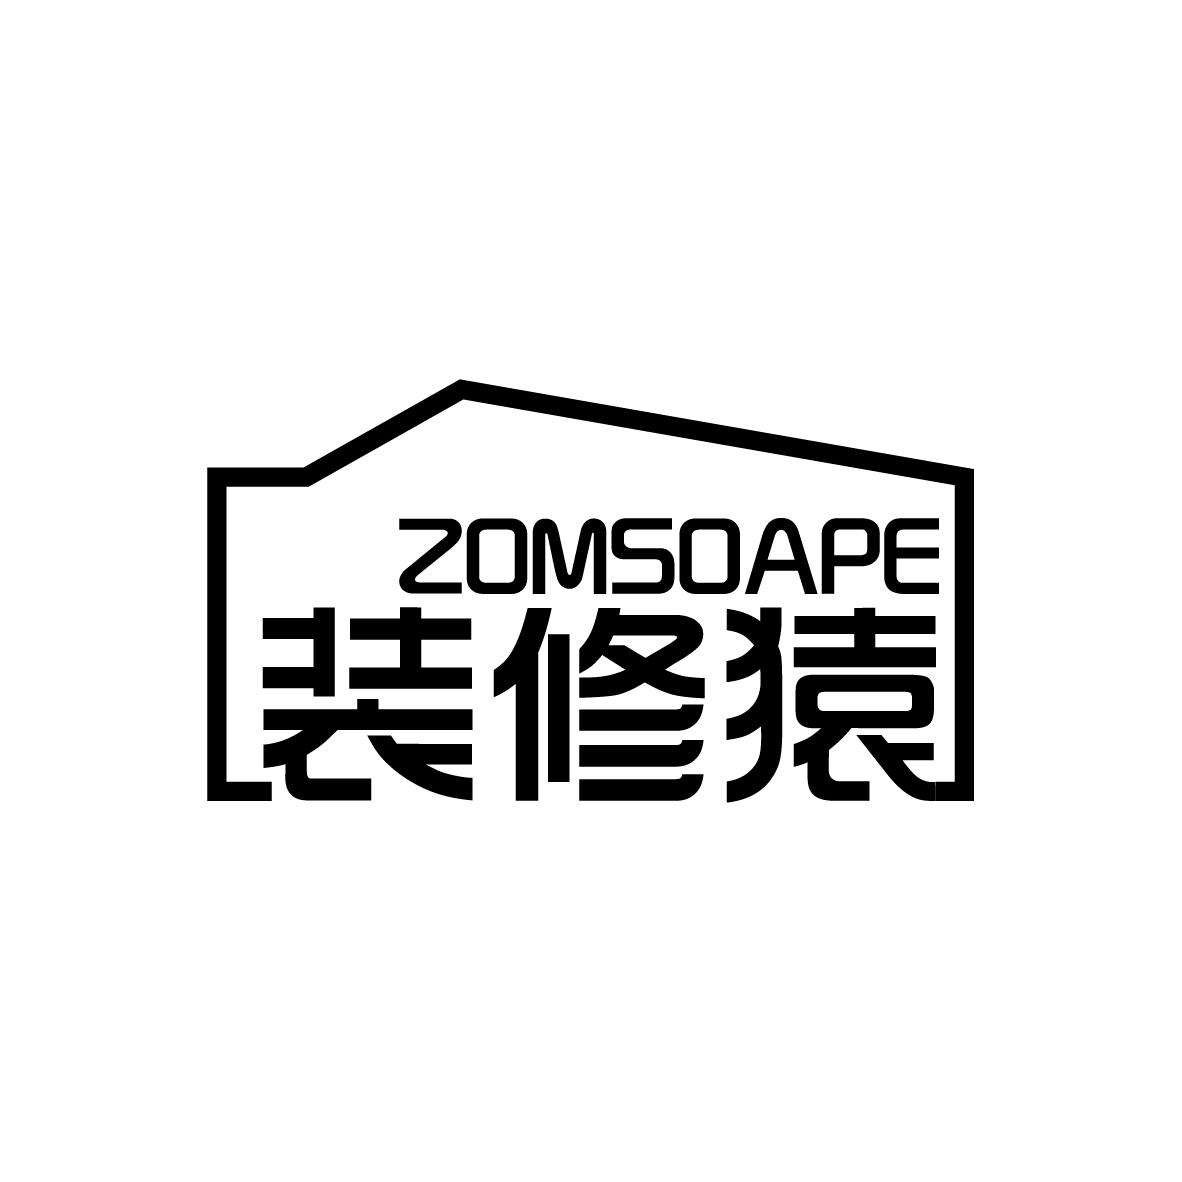 37类-建筑维修装修猿 ZOMSOAPE商标转让